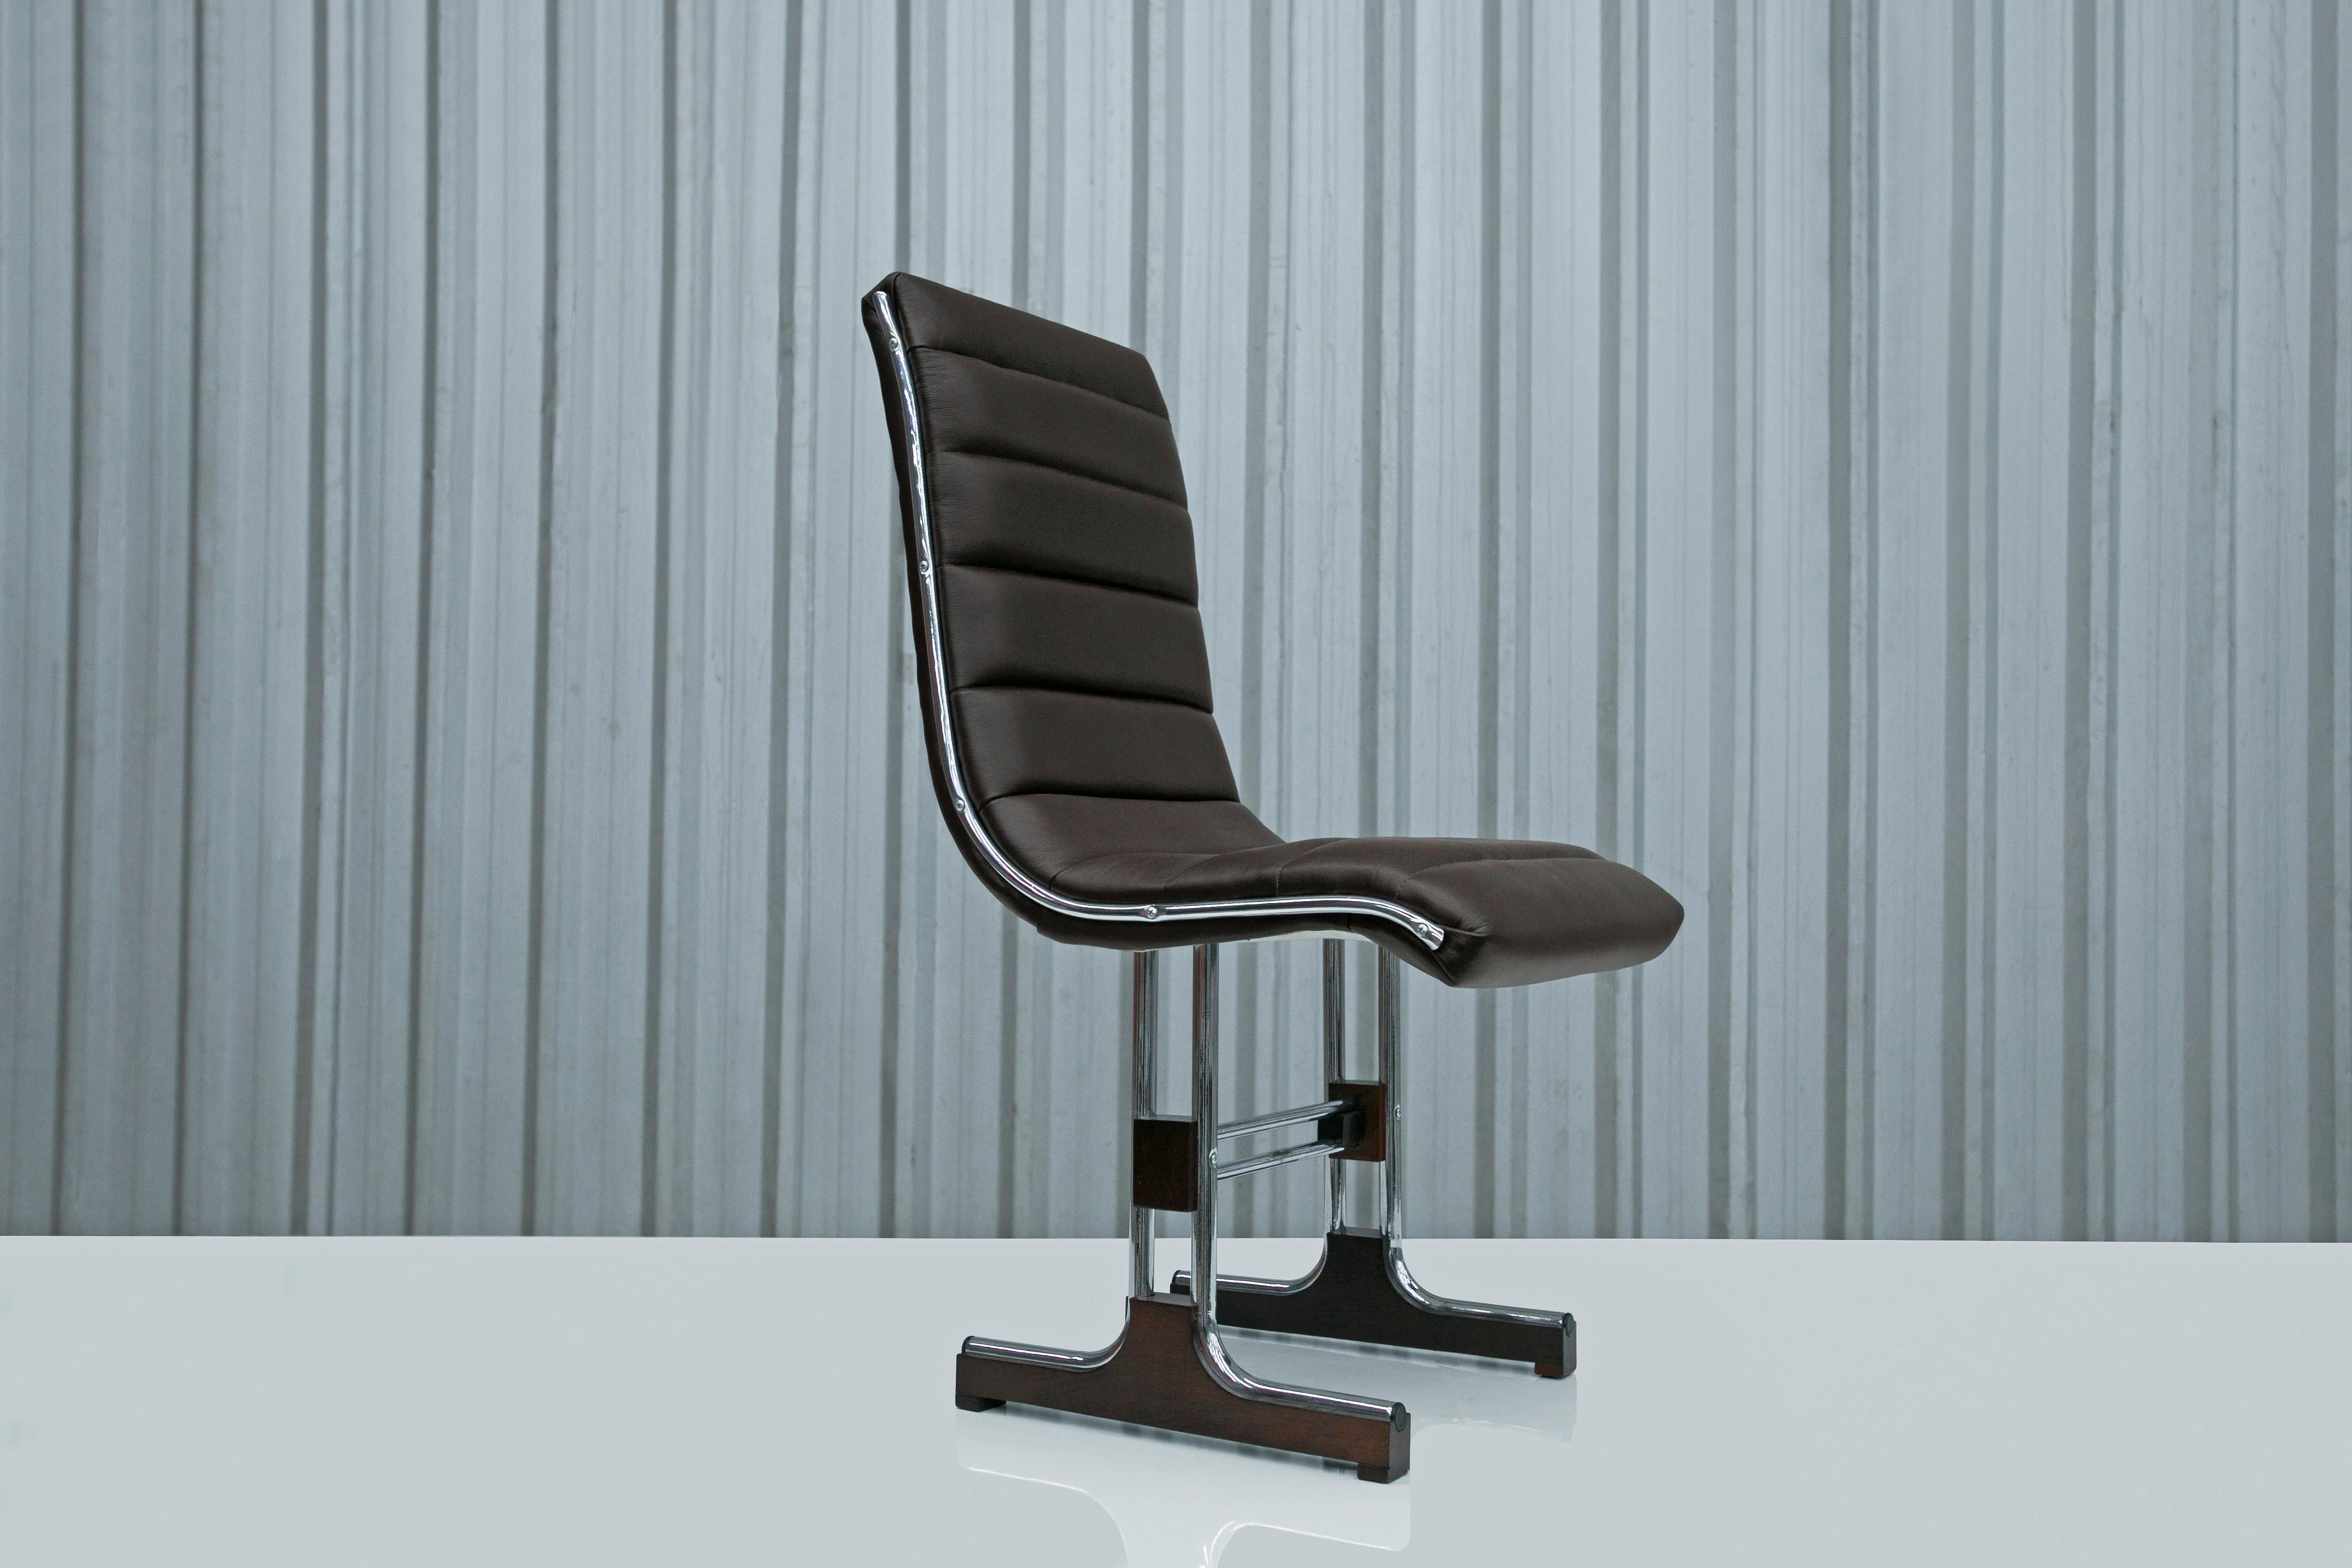 Disponible aujourd'hui, cet ensemble de chaises modernes brésiliennes en métal chromé, bois et cuir de Barszenski est absolument stupéfiant. 

Les pieds et la base de la chaise ont été rénovés en métal chromé. La structure du siège est en bois dur